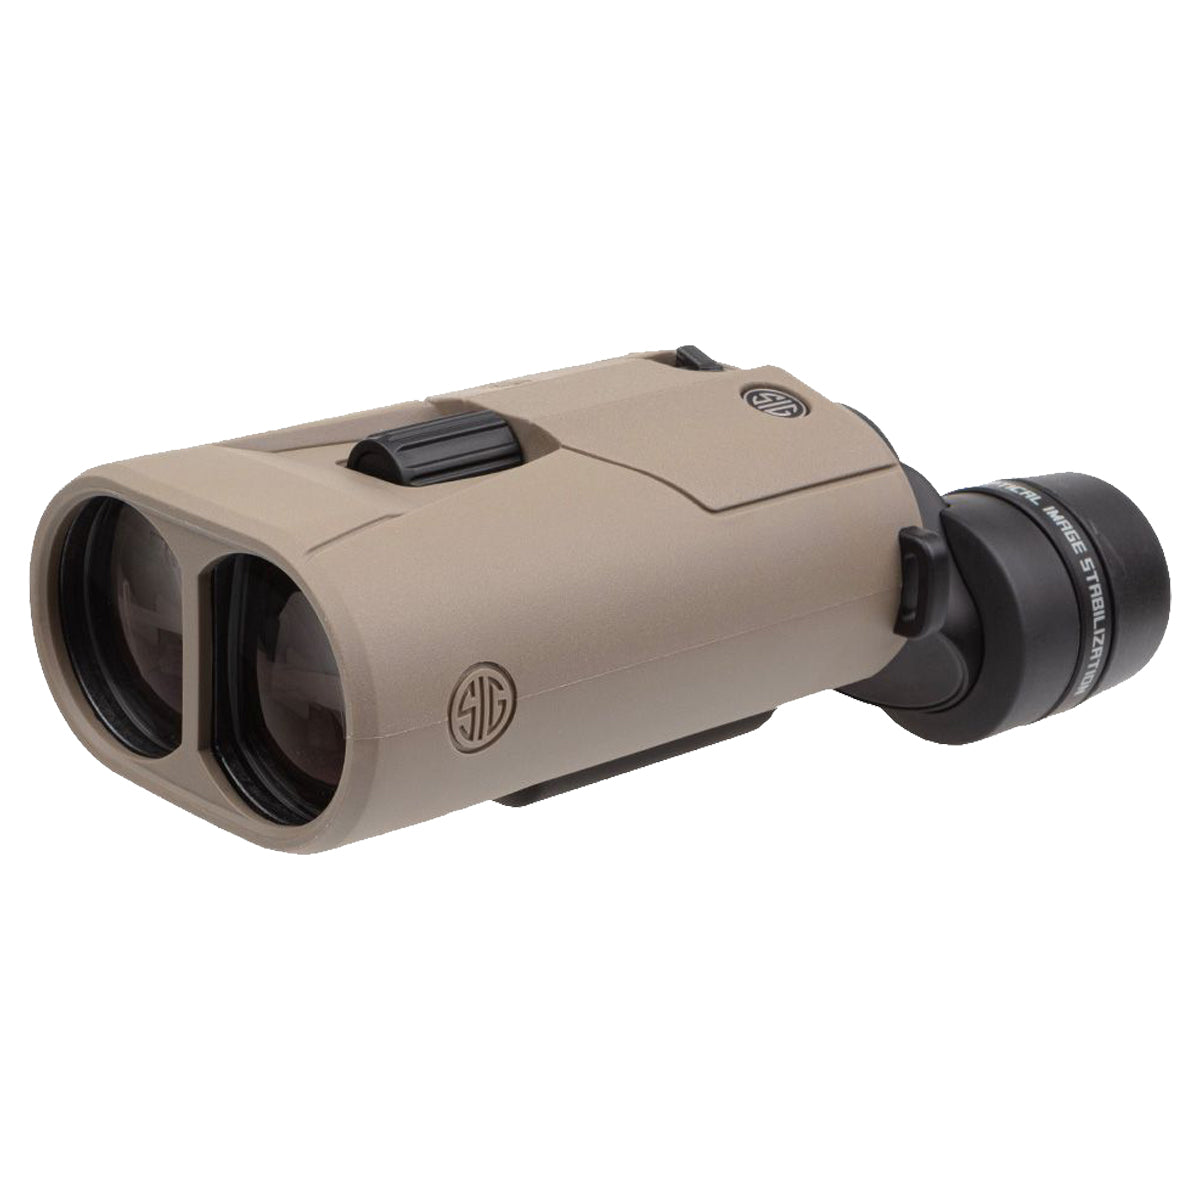 Sig Sauer ZULU6 HDX 12x42mm Image Stabilized Binocular in  by GOHUNT | Sig Sauer - GOHUNT Shop